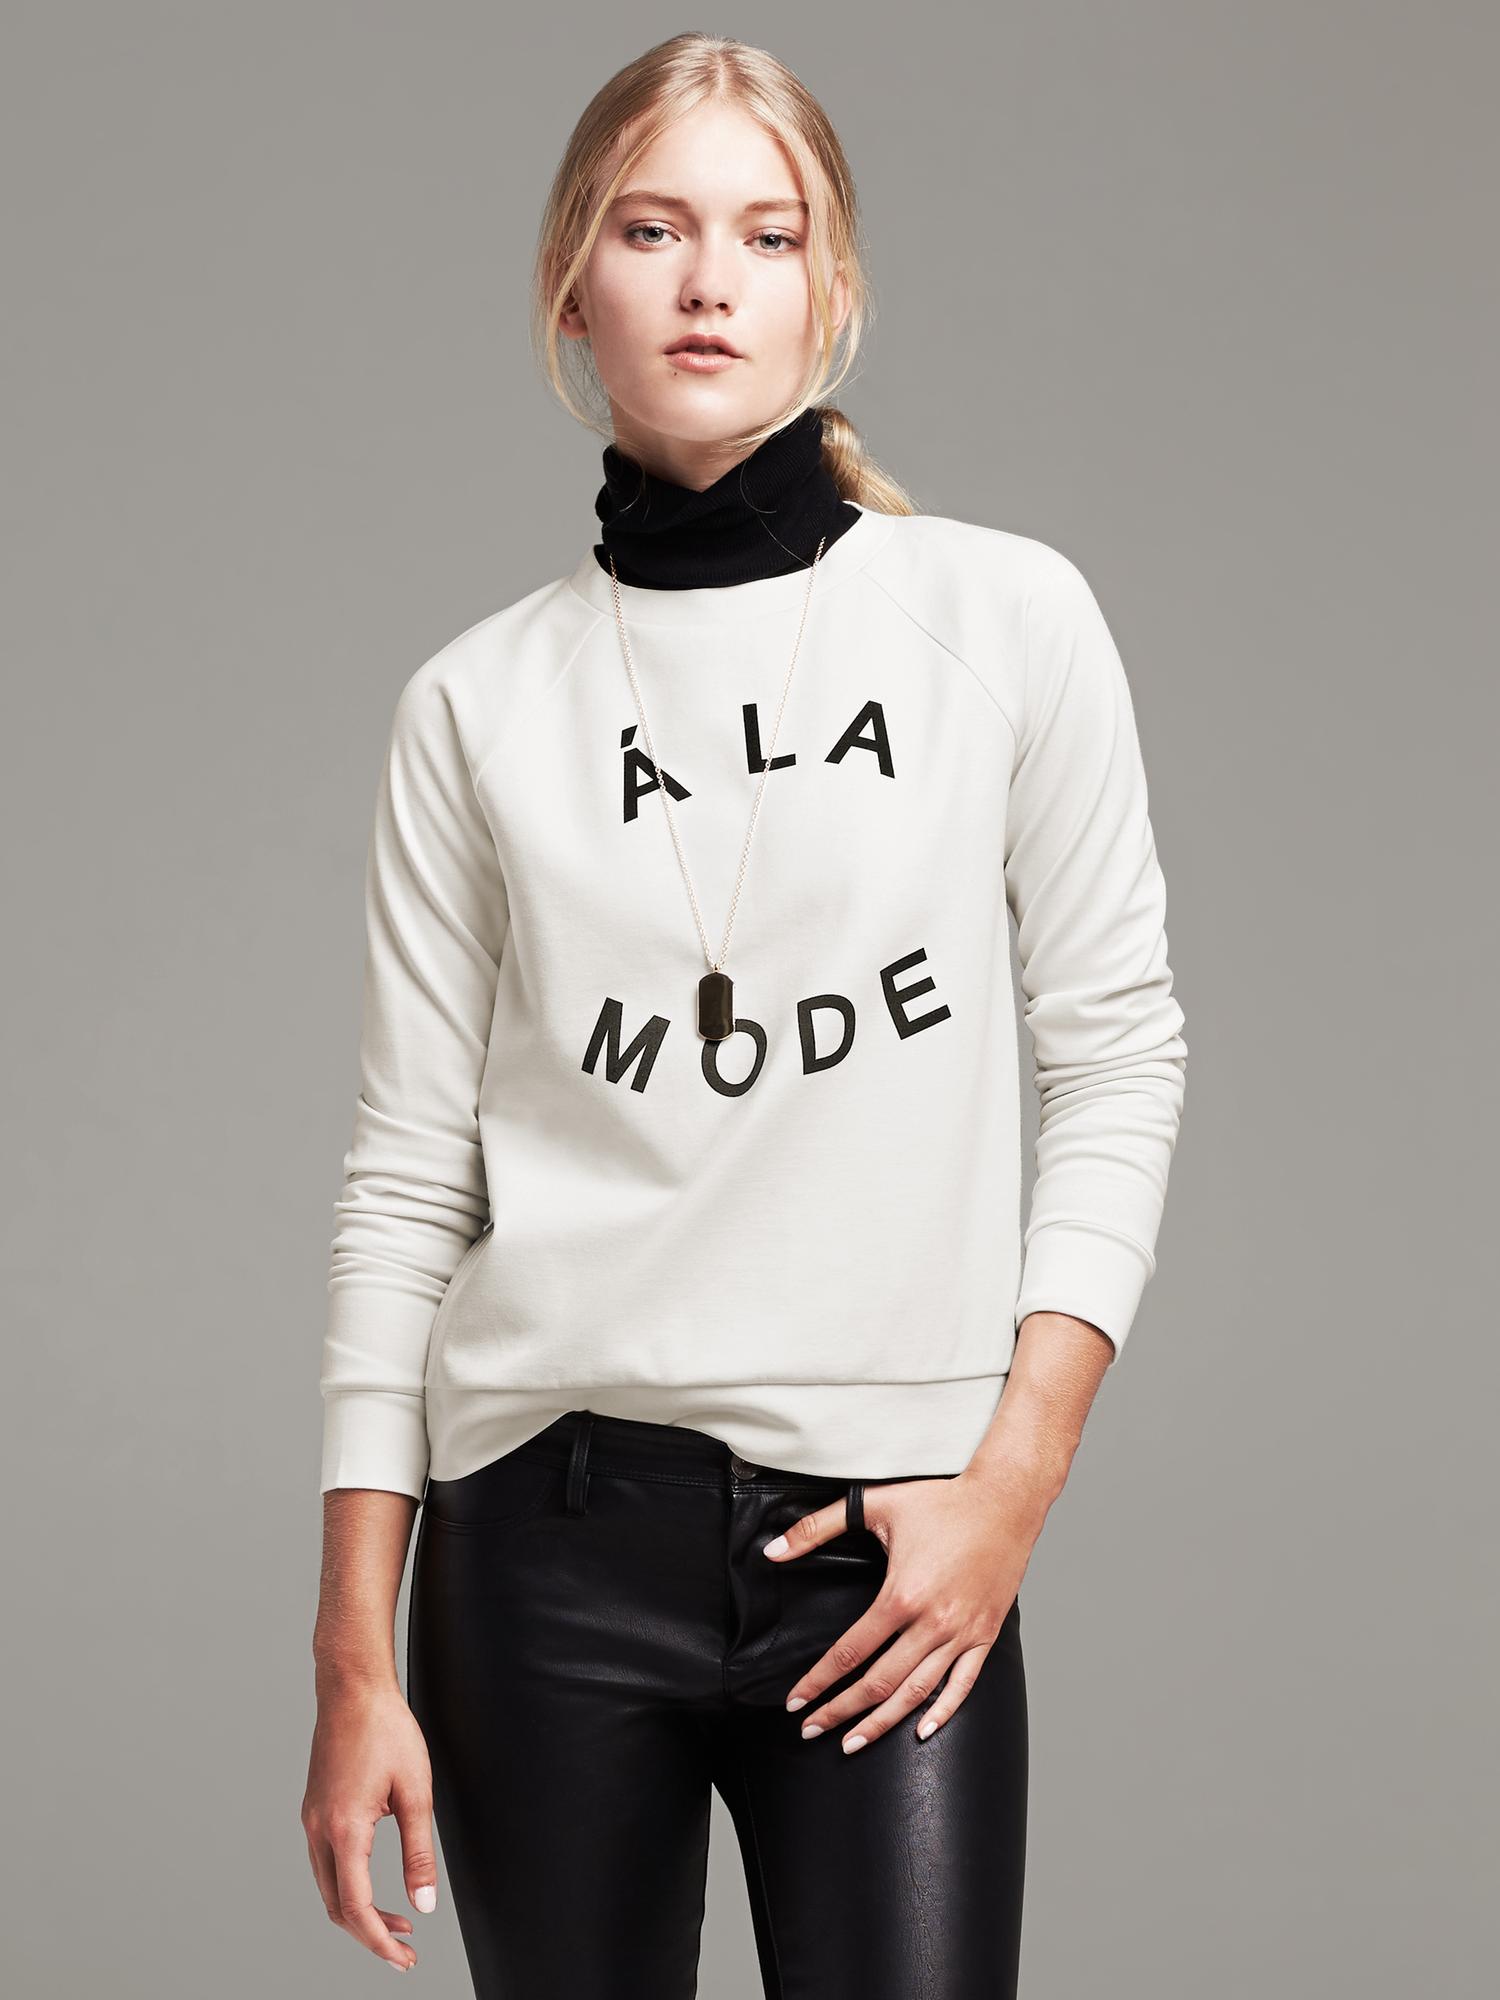 "A La Mode" Pullover